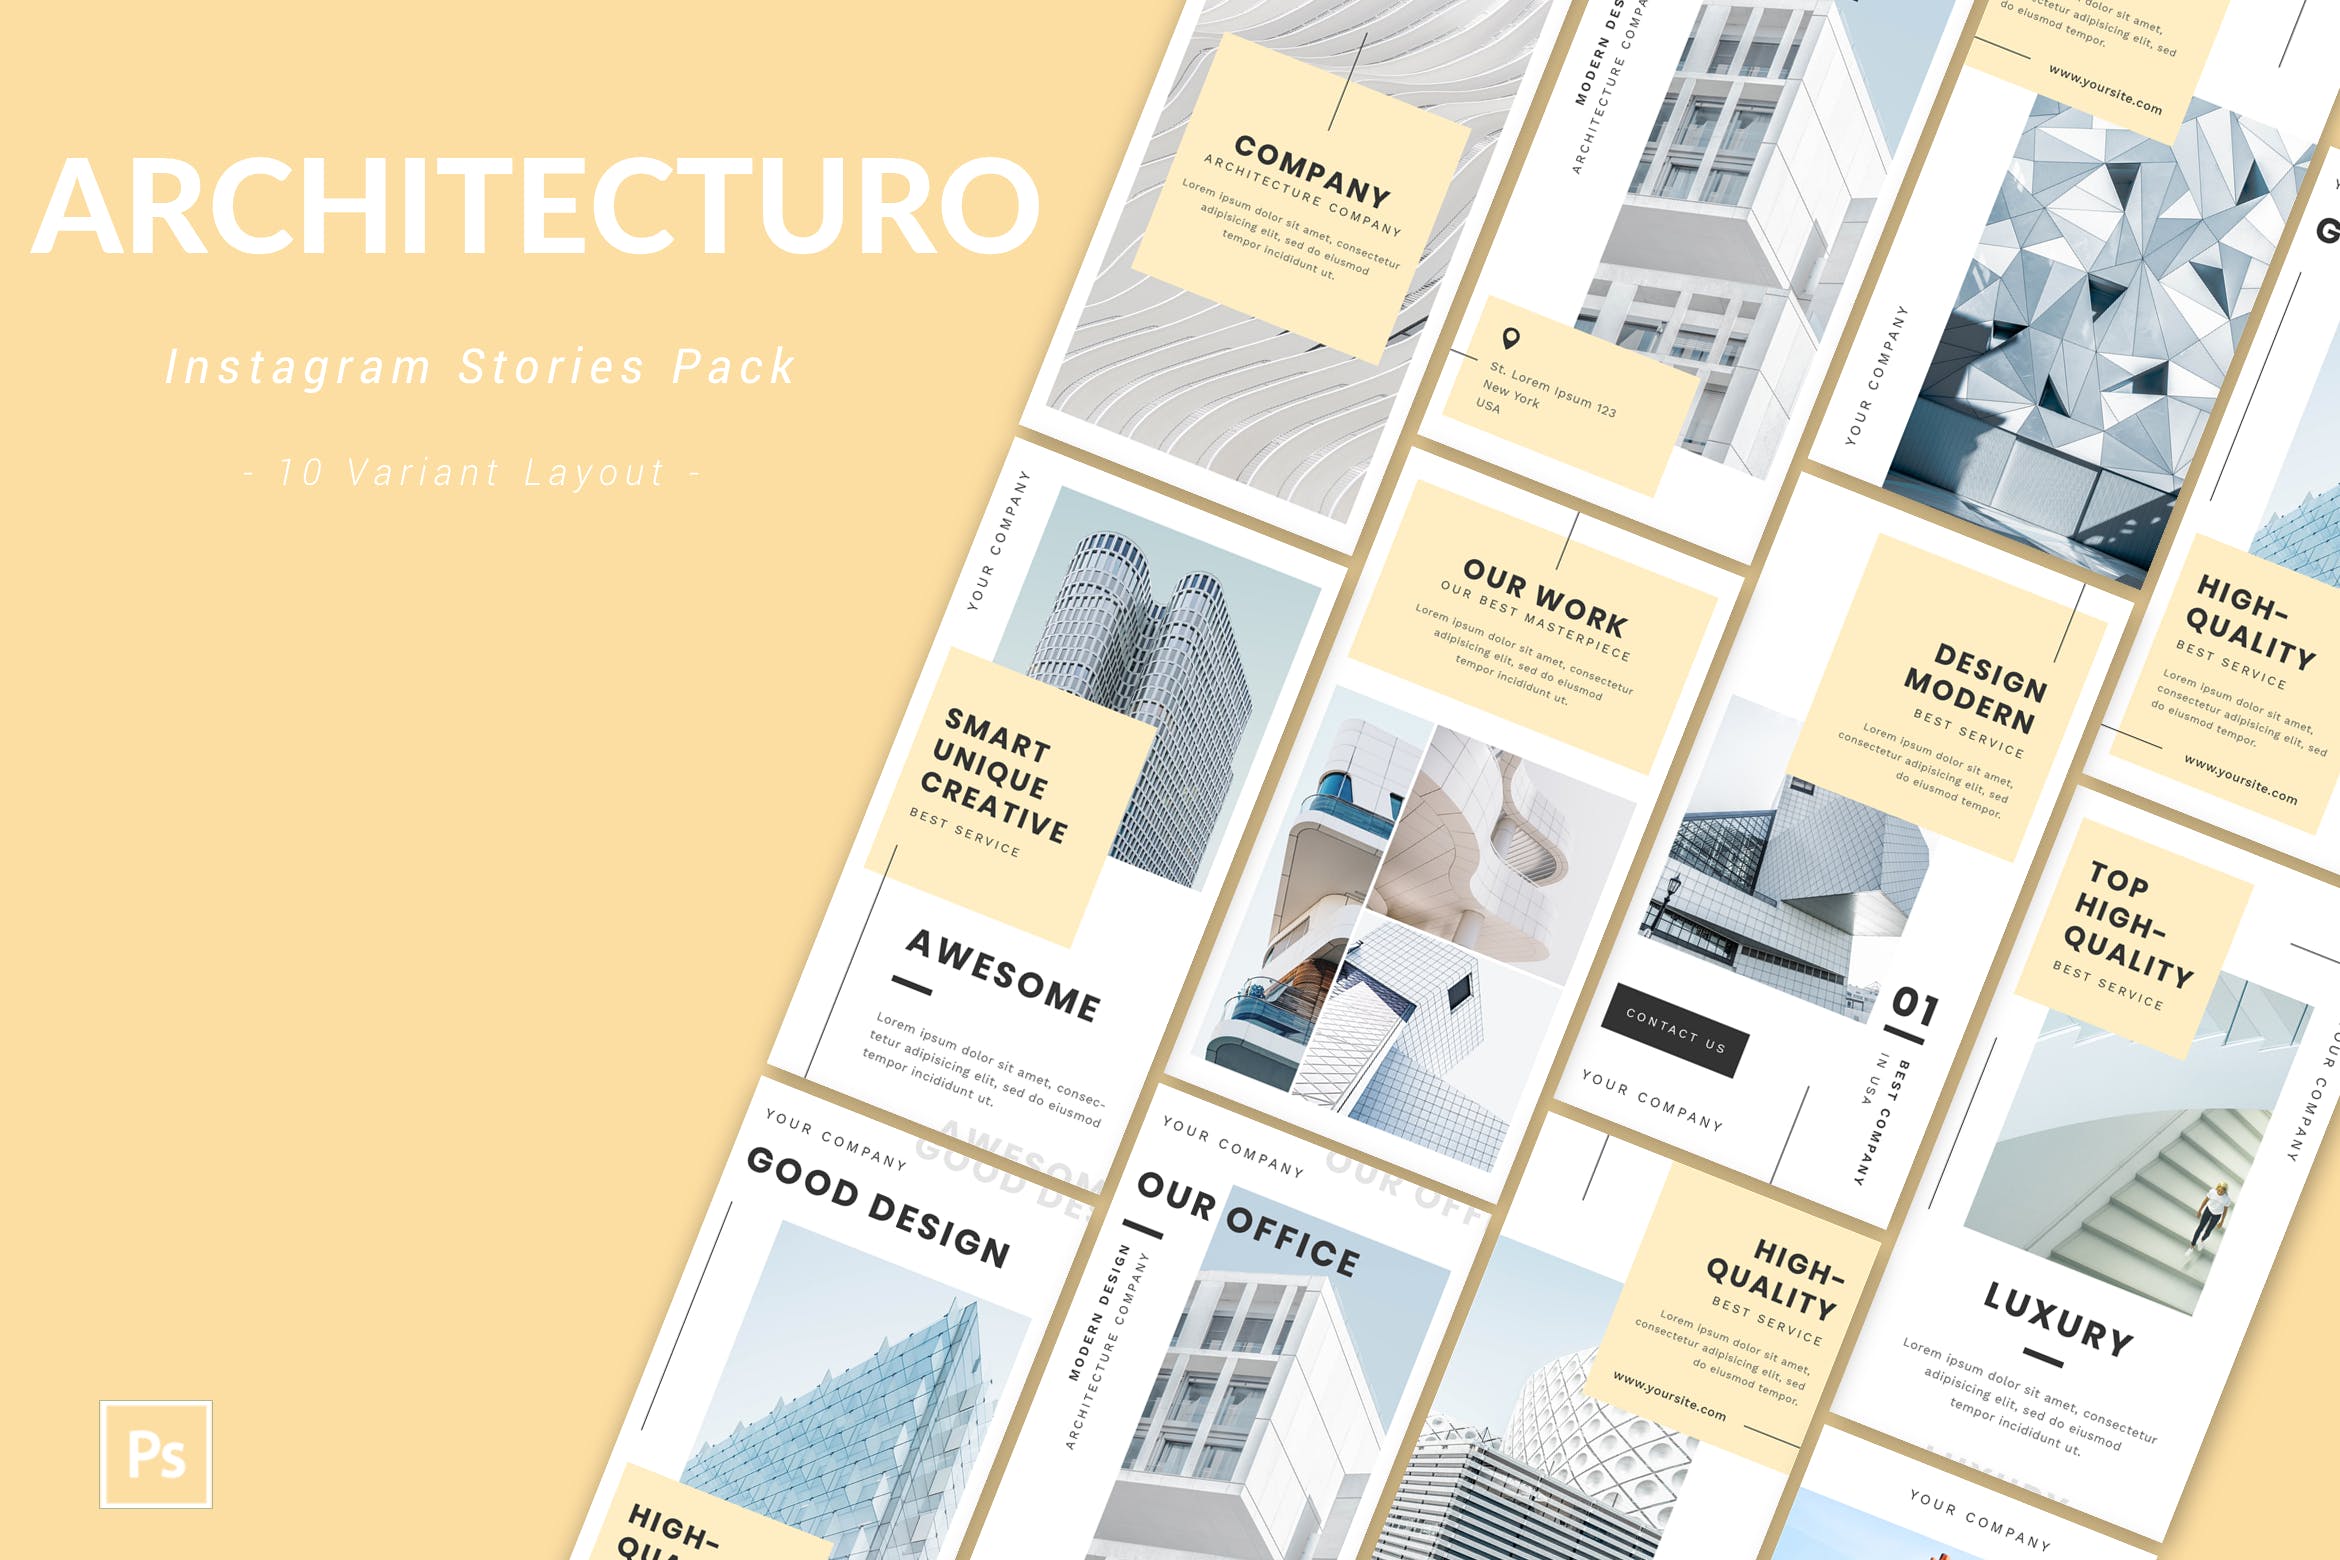 建筑设计品牌Instagram社交营销广告PSD模板素材库精选 Architecturo – Instagram Story Pack插图